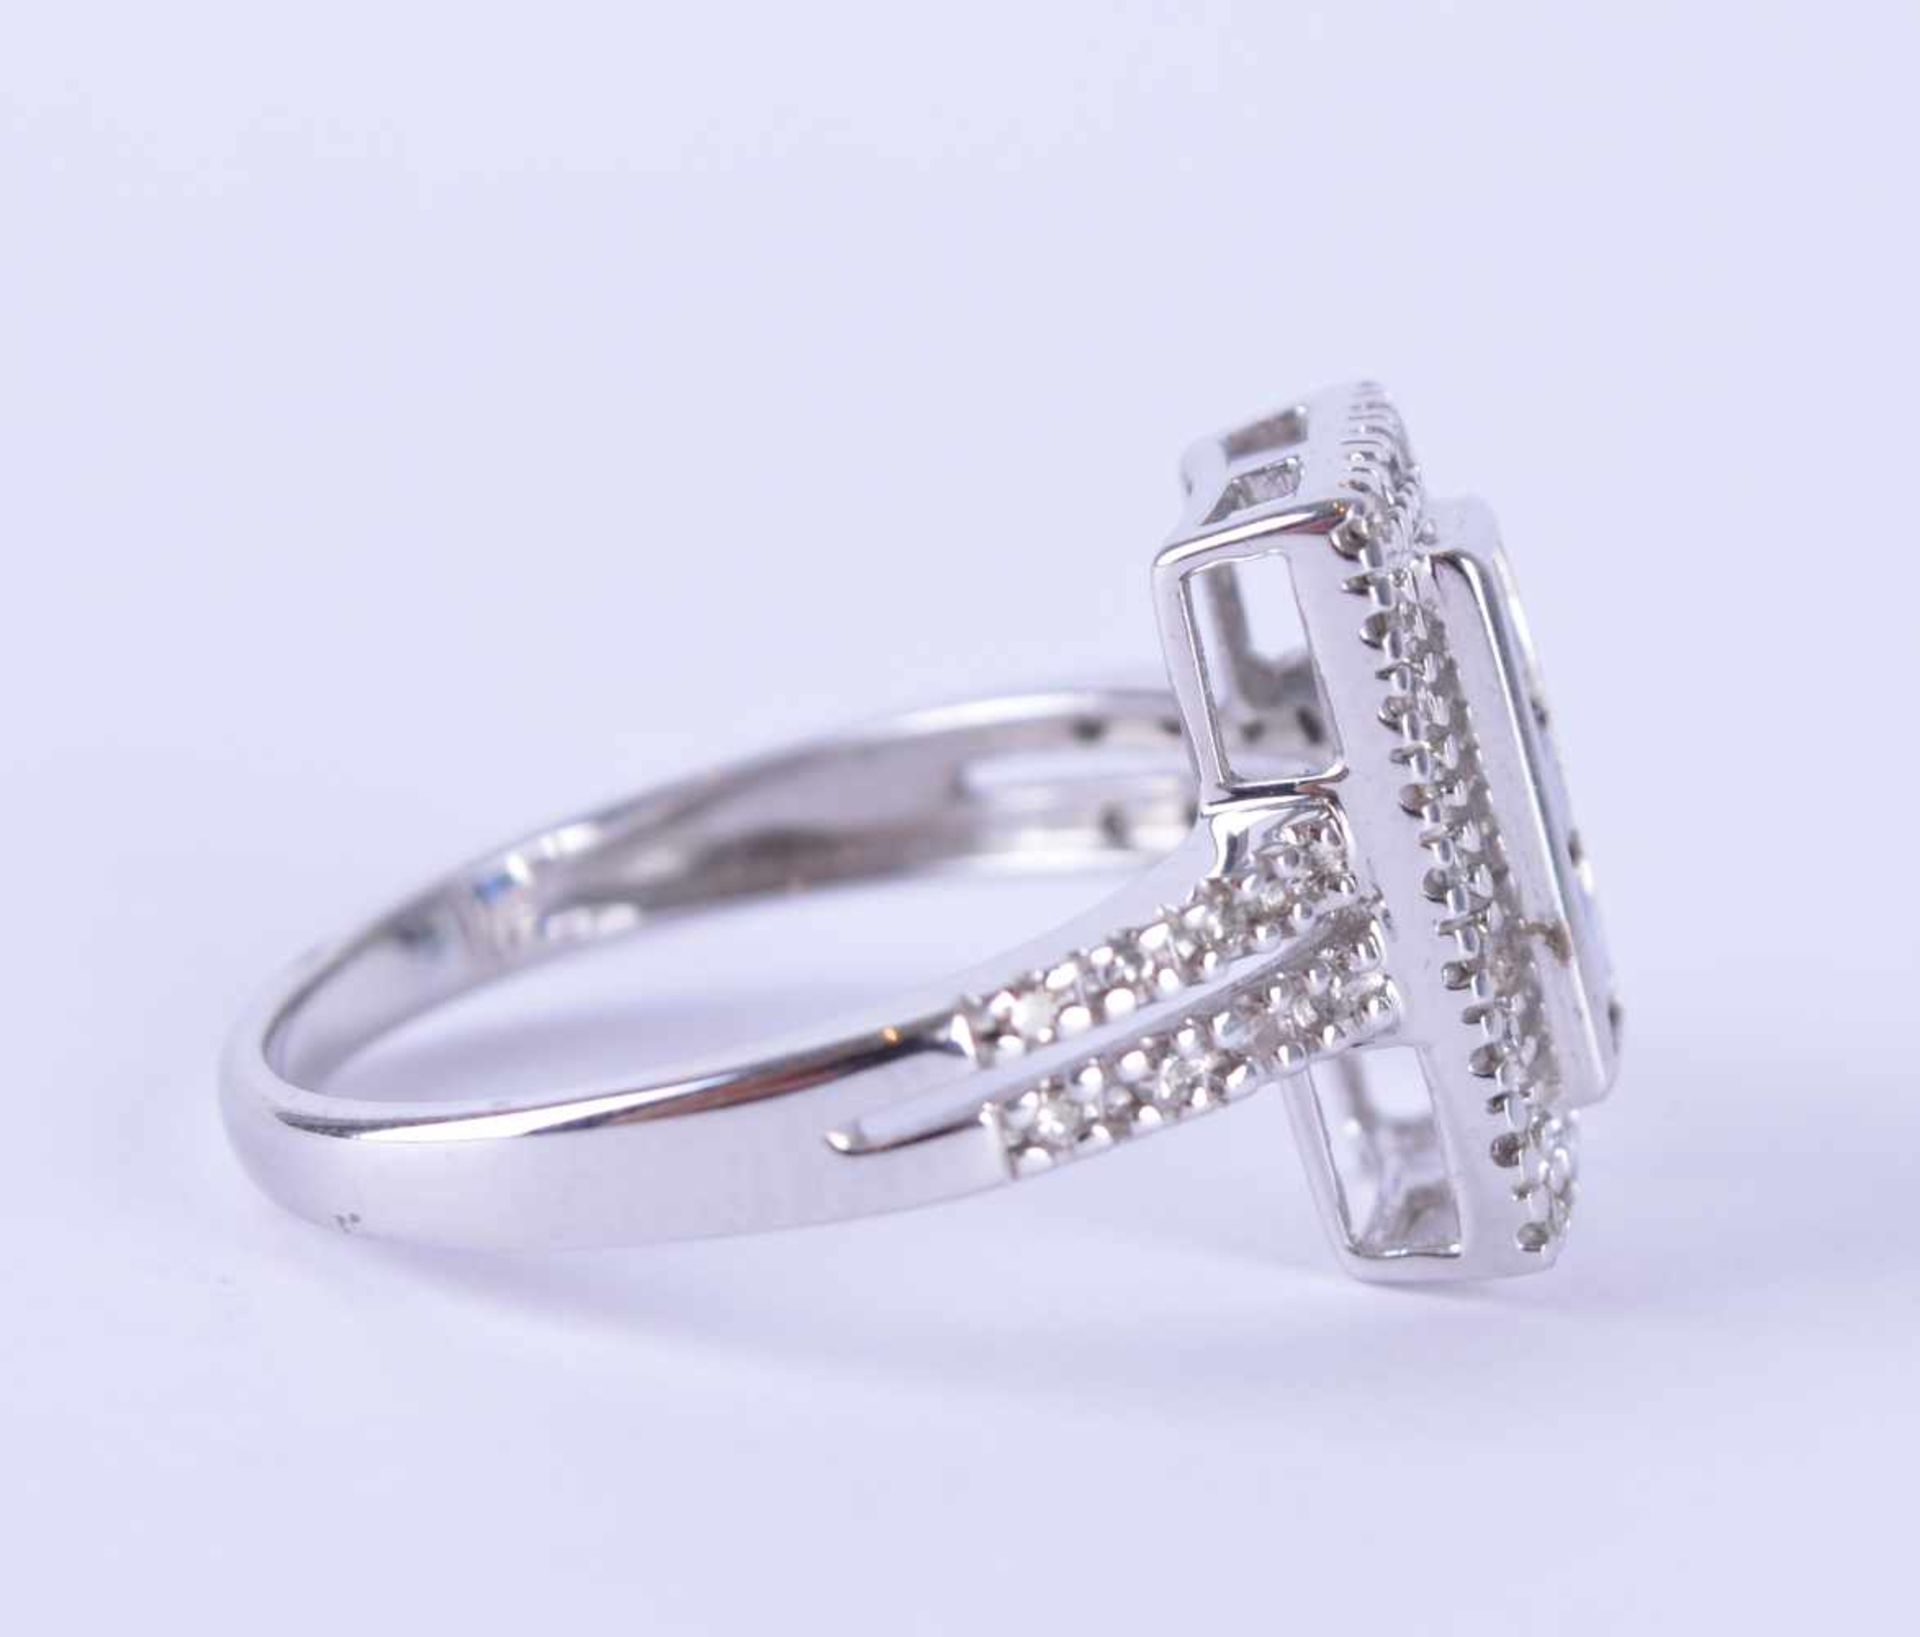 Brillant-Saphirring / Brilliant sapphire ringWG 585/000, Diamanten zusammen 0,20 ct, Saphir 0,50 ct, - Bild 2 aus 5